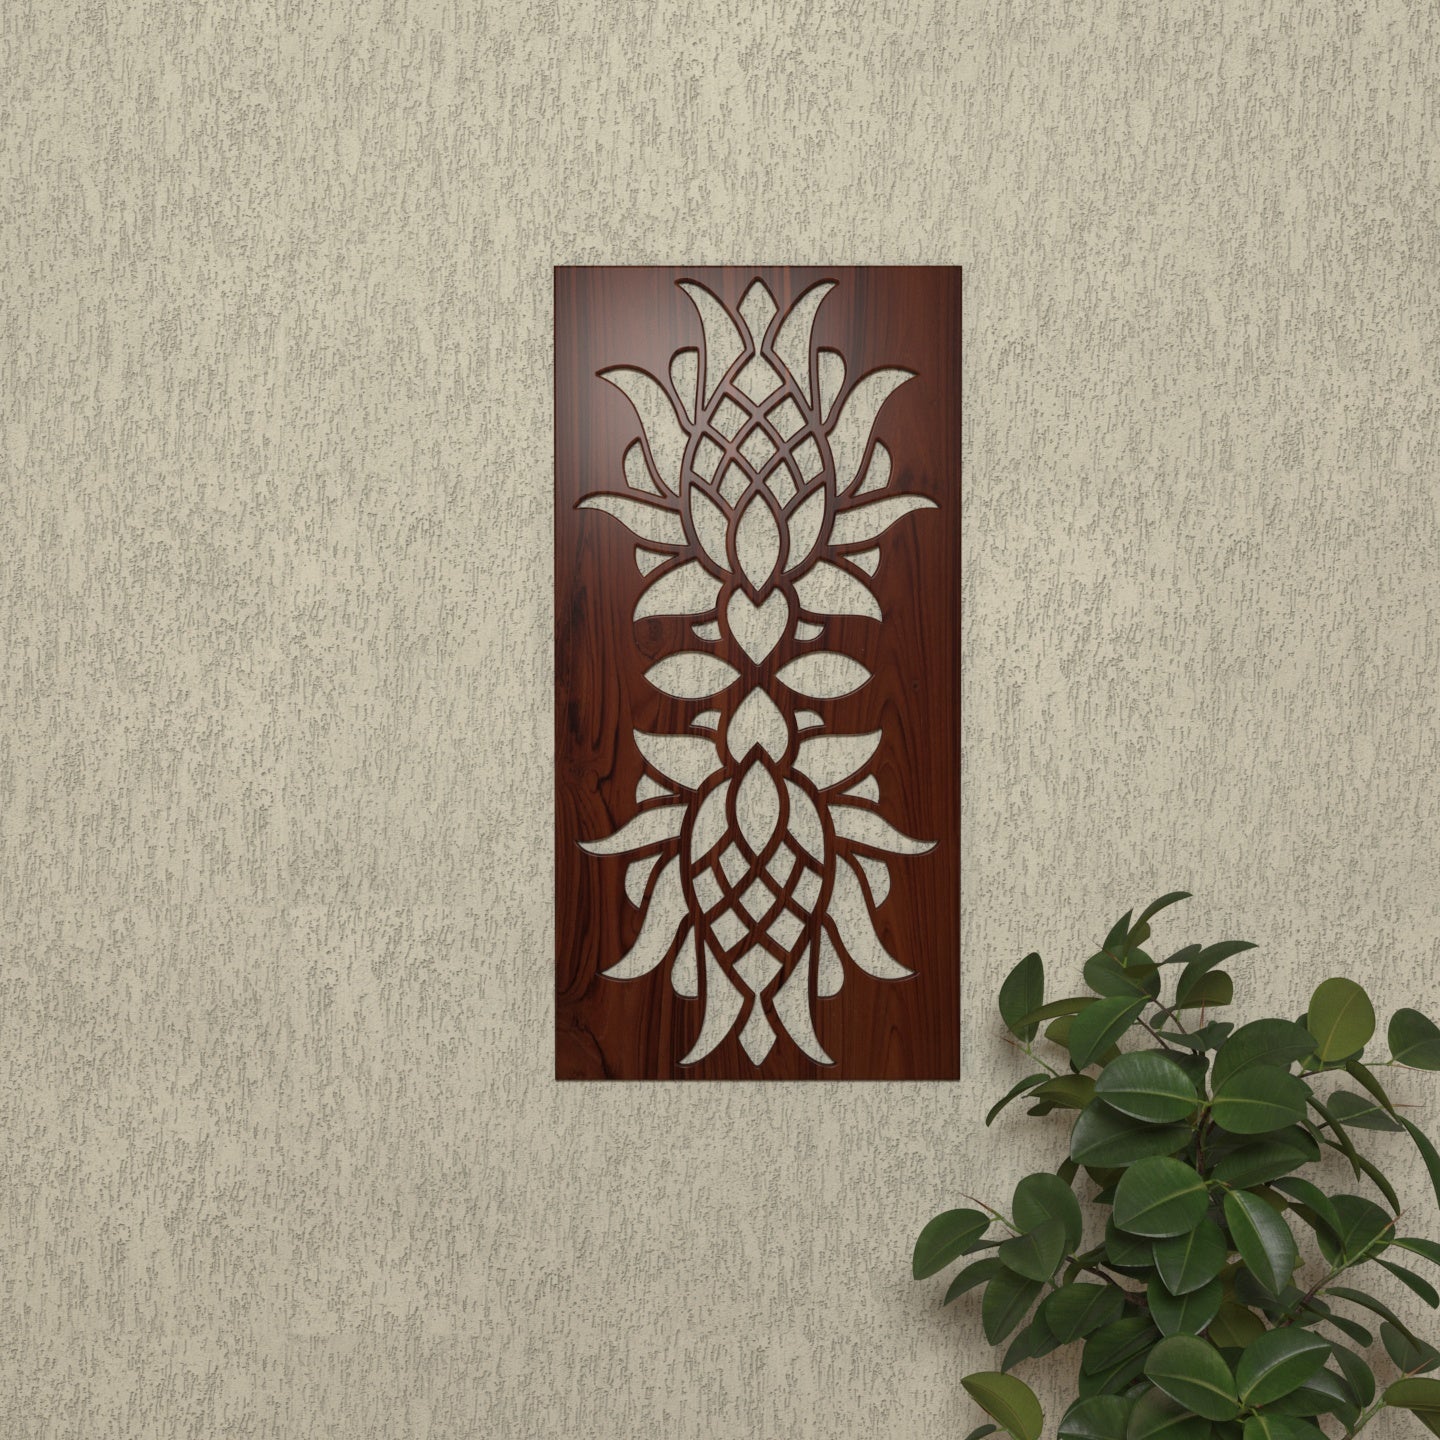 Classic Dark Denver Flower Designed Wall Decor for Home Wall Decor